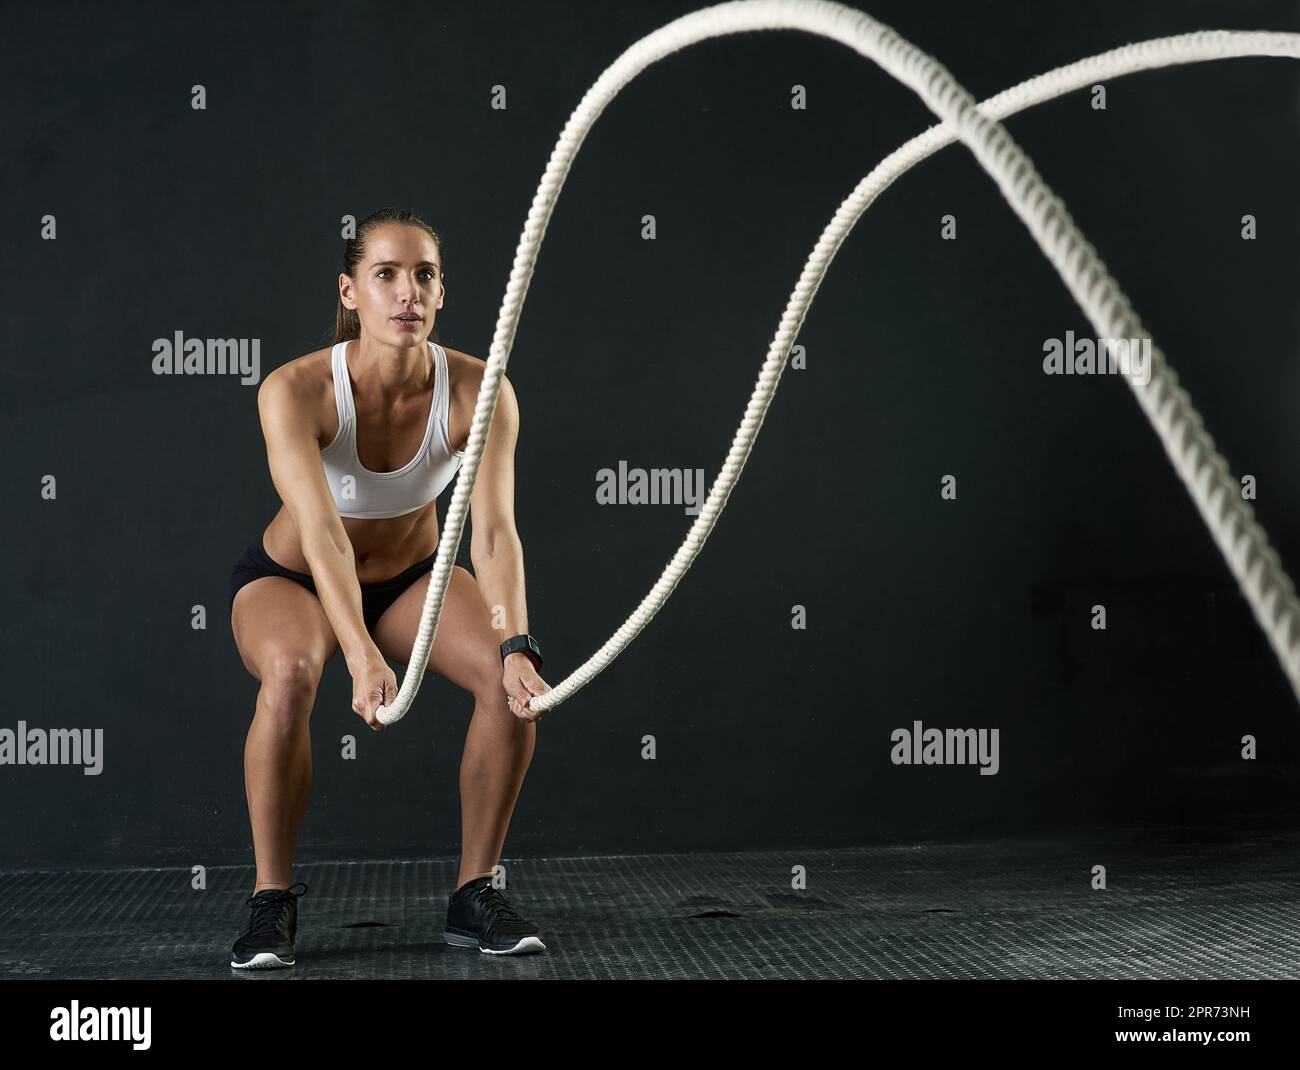 Preparatevi alla battaglia. Studio girato di una giovane donna attraente che si sta allenando con corde pesanti su uno sfondo scuro. Foto Stock